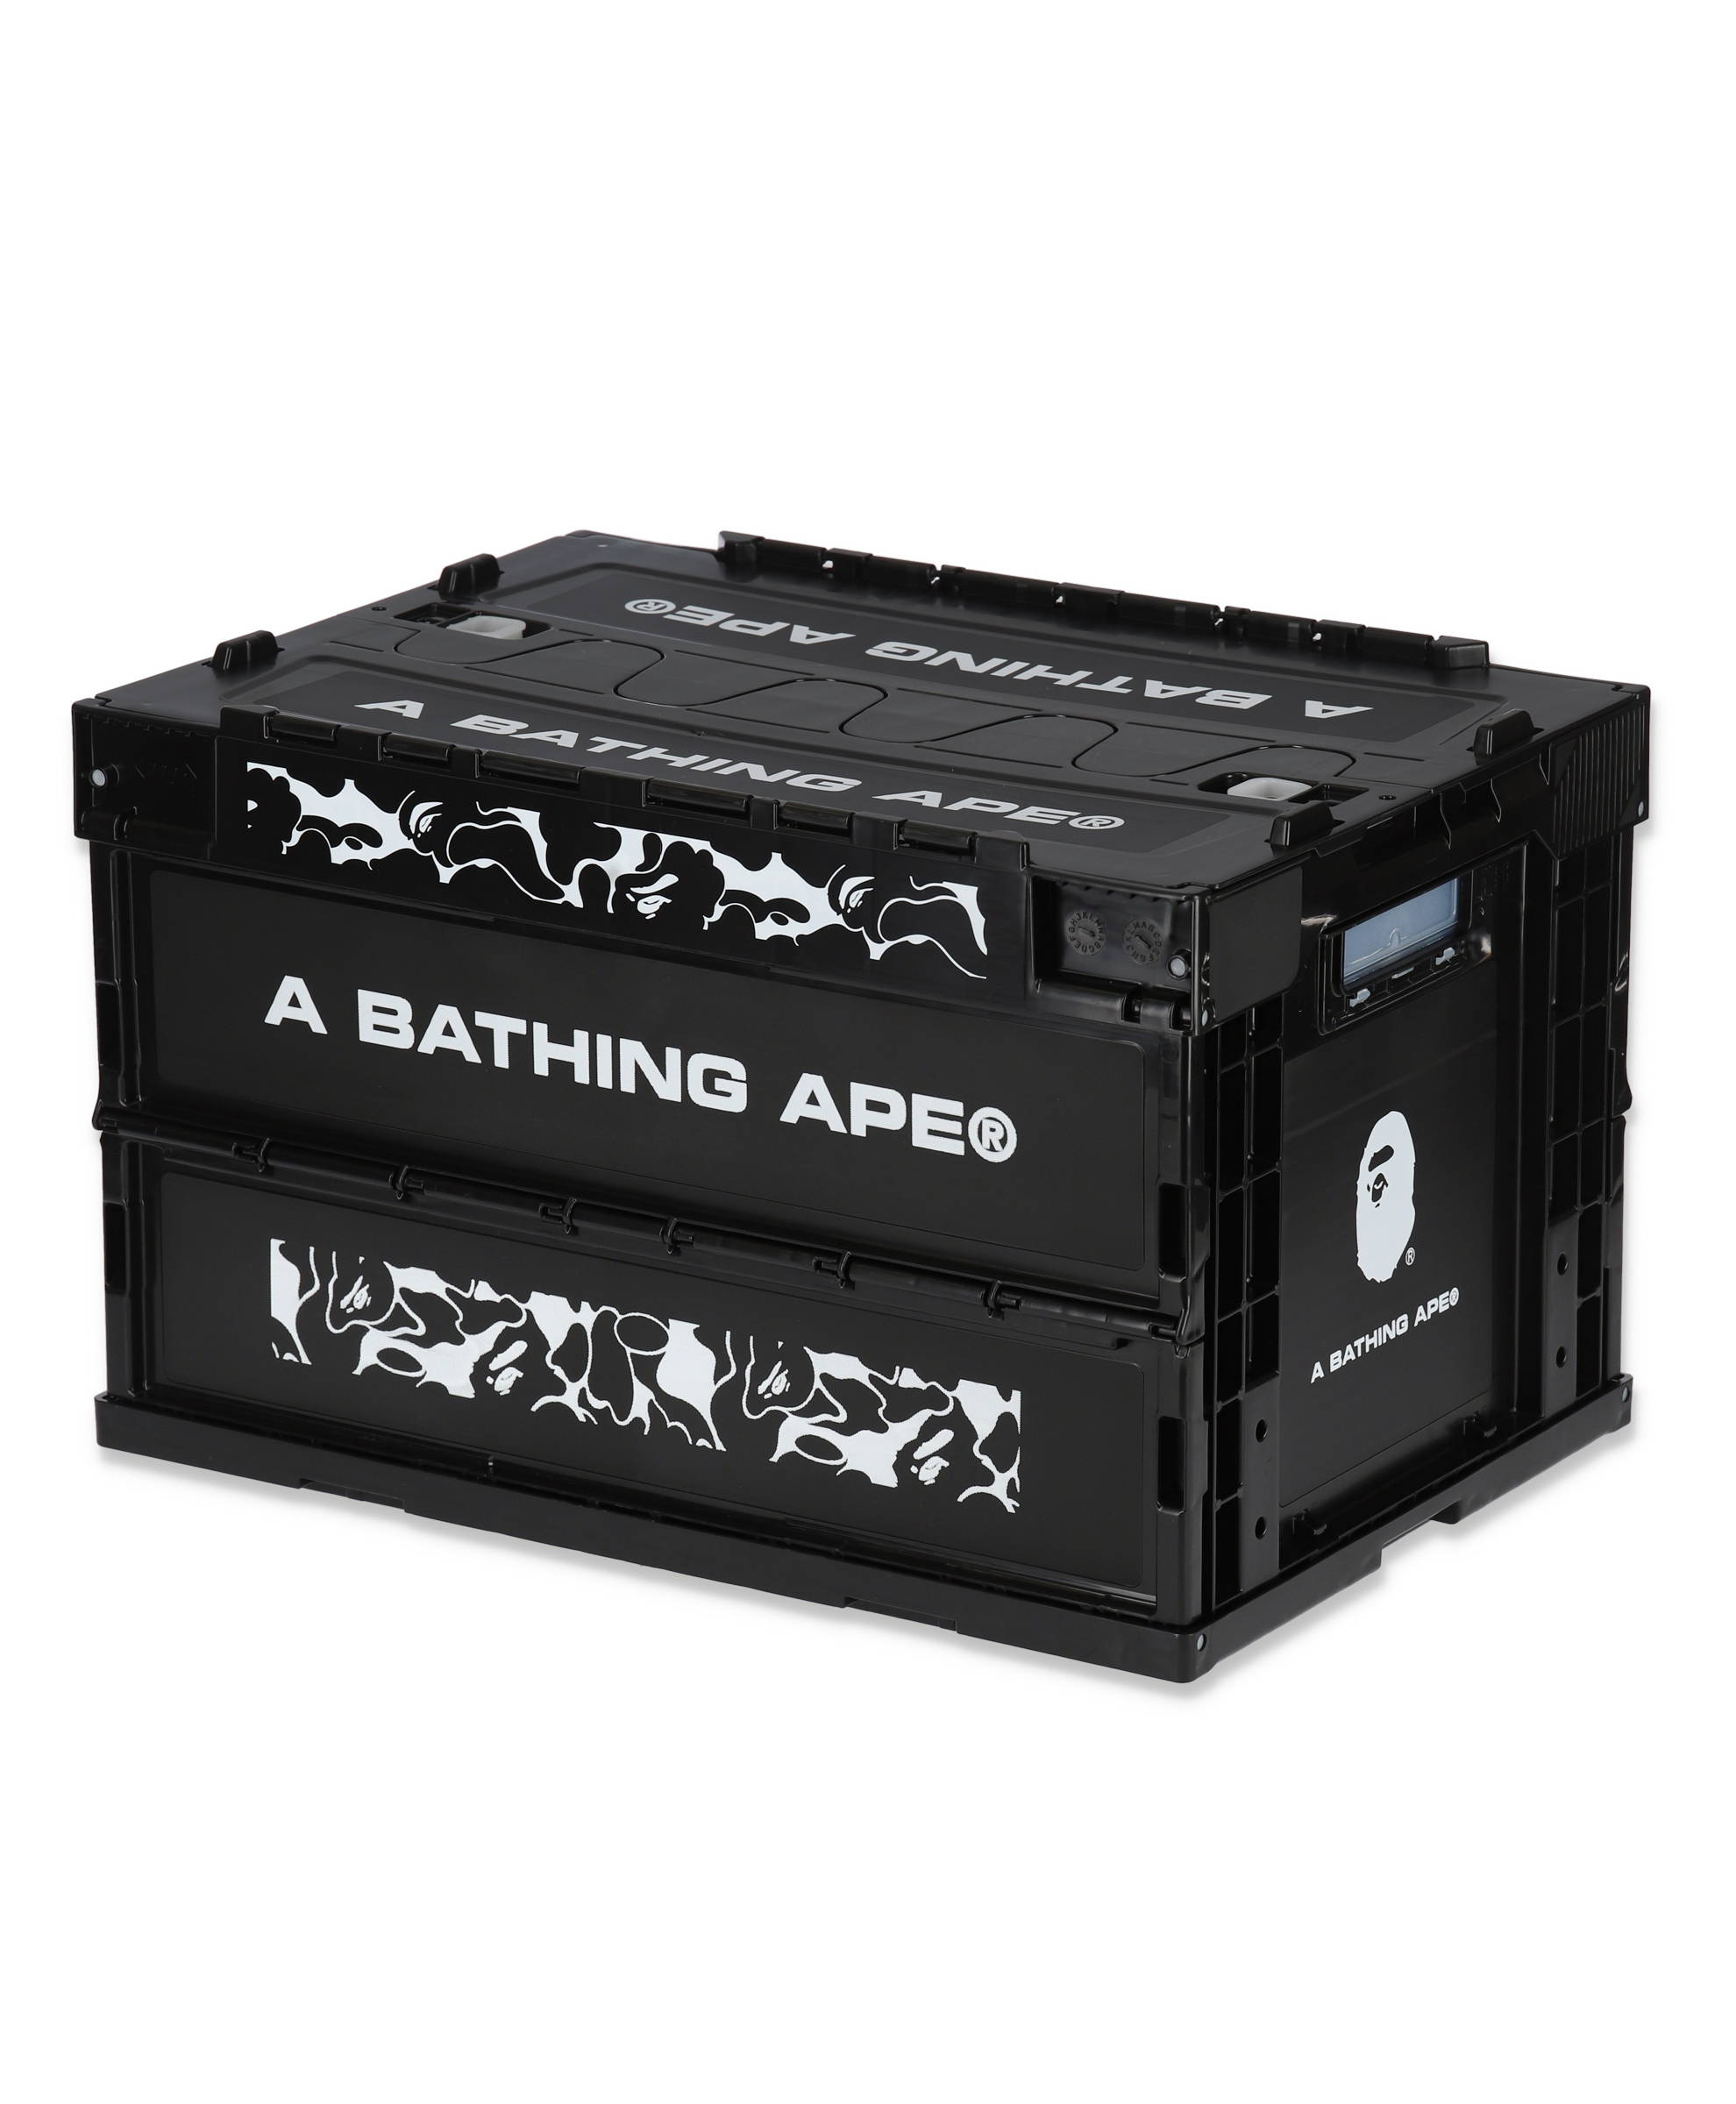 A BATHING APE® 2021 A/W GOODS COLLECTION | bape.com